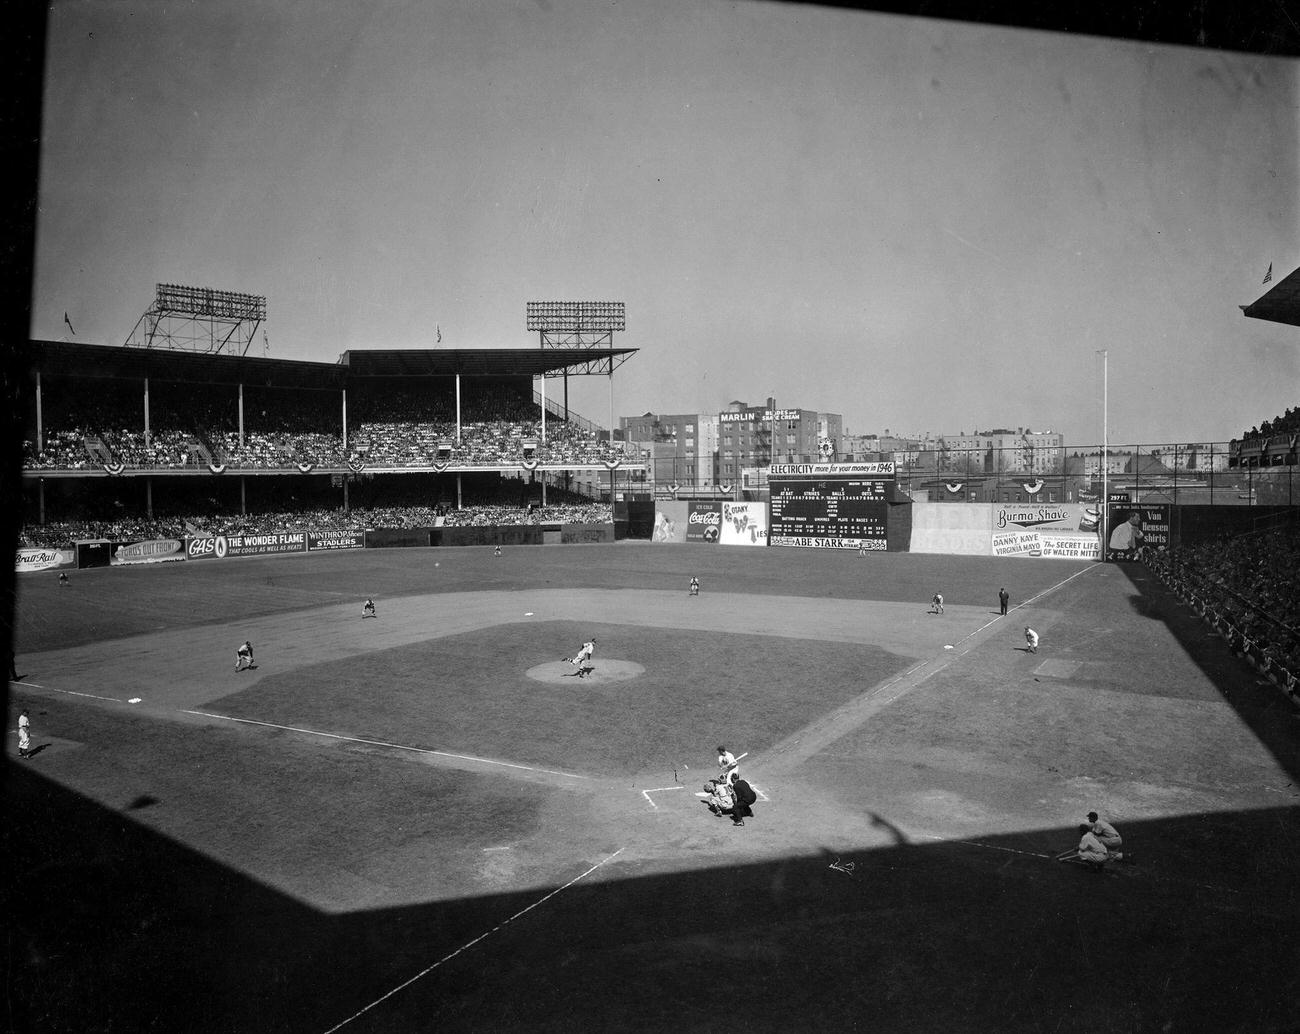 Brooklyn Dodgers Vs. Boston Braves At Ebbets Field, Brooklyn, April 15, 1947.